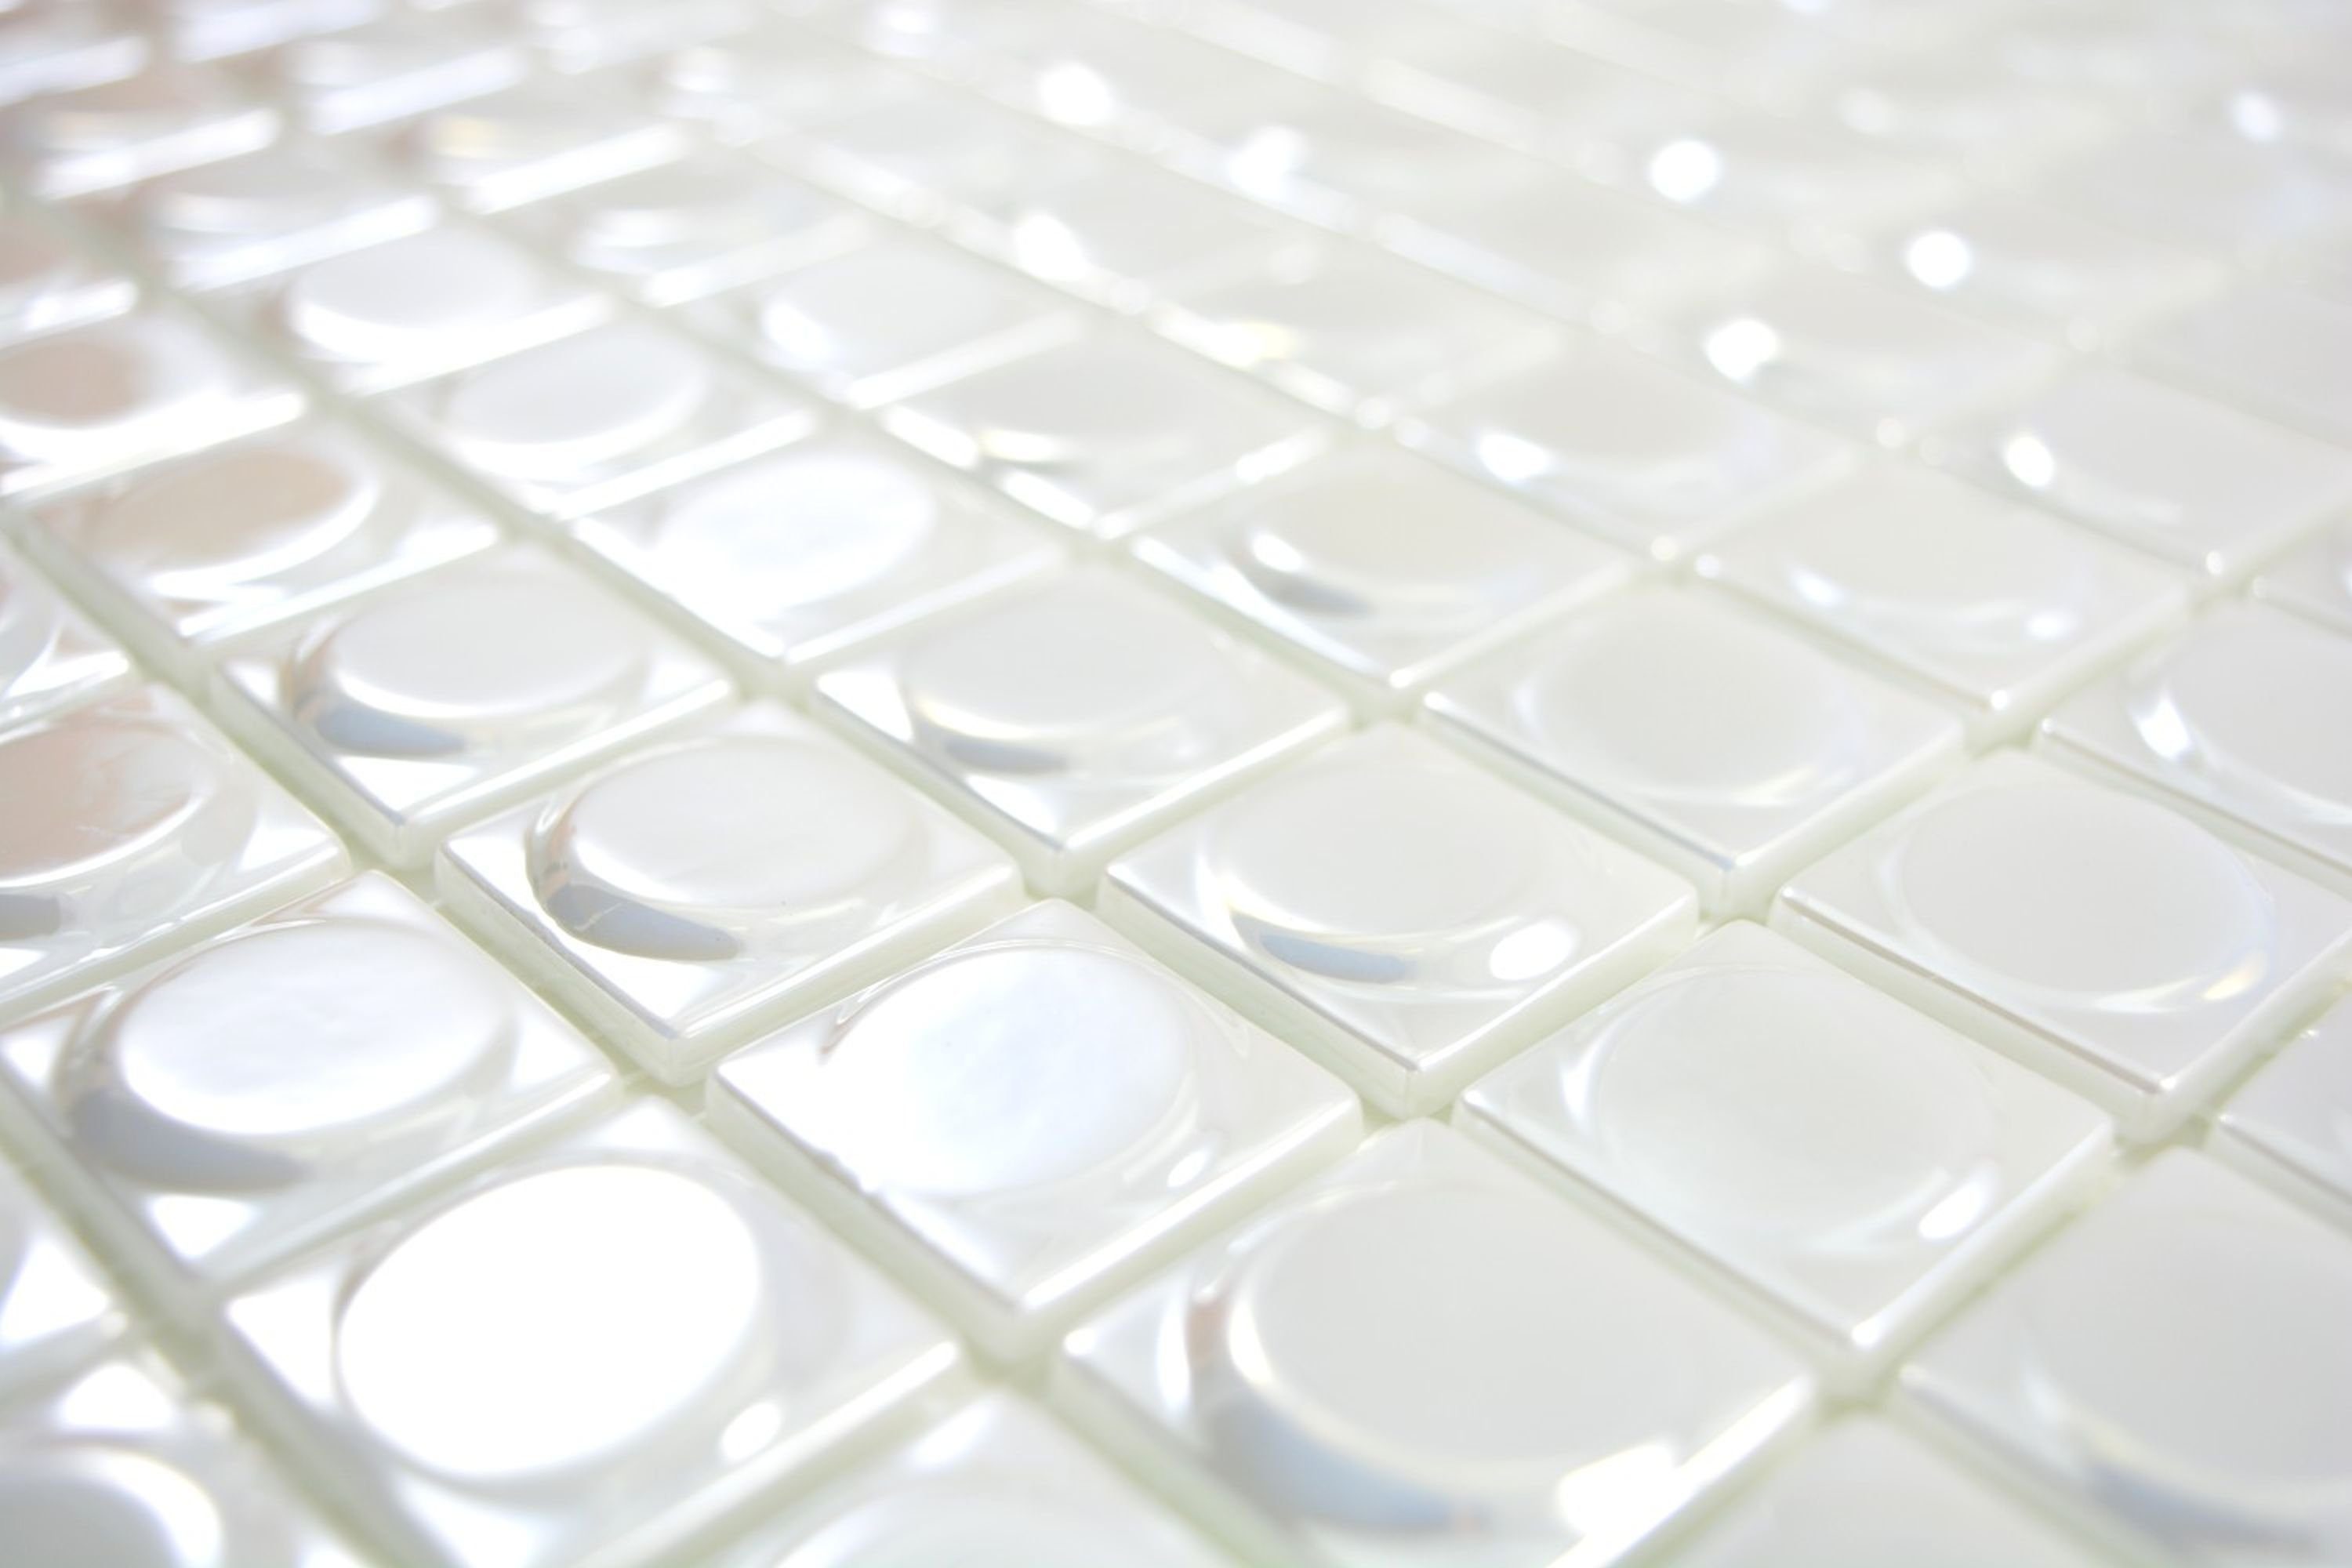 Mosani Mosaikfliesen Recycling Glasmosaik Mosaikfliesen / Mosaikmatten glänzend weiß 10